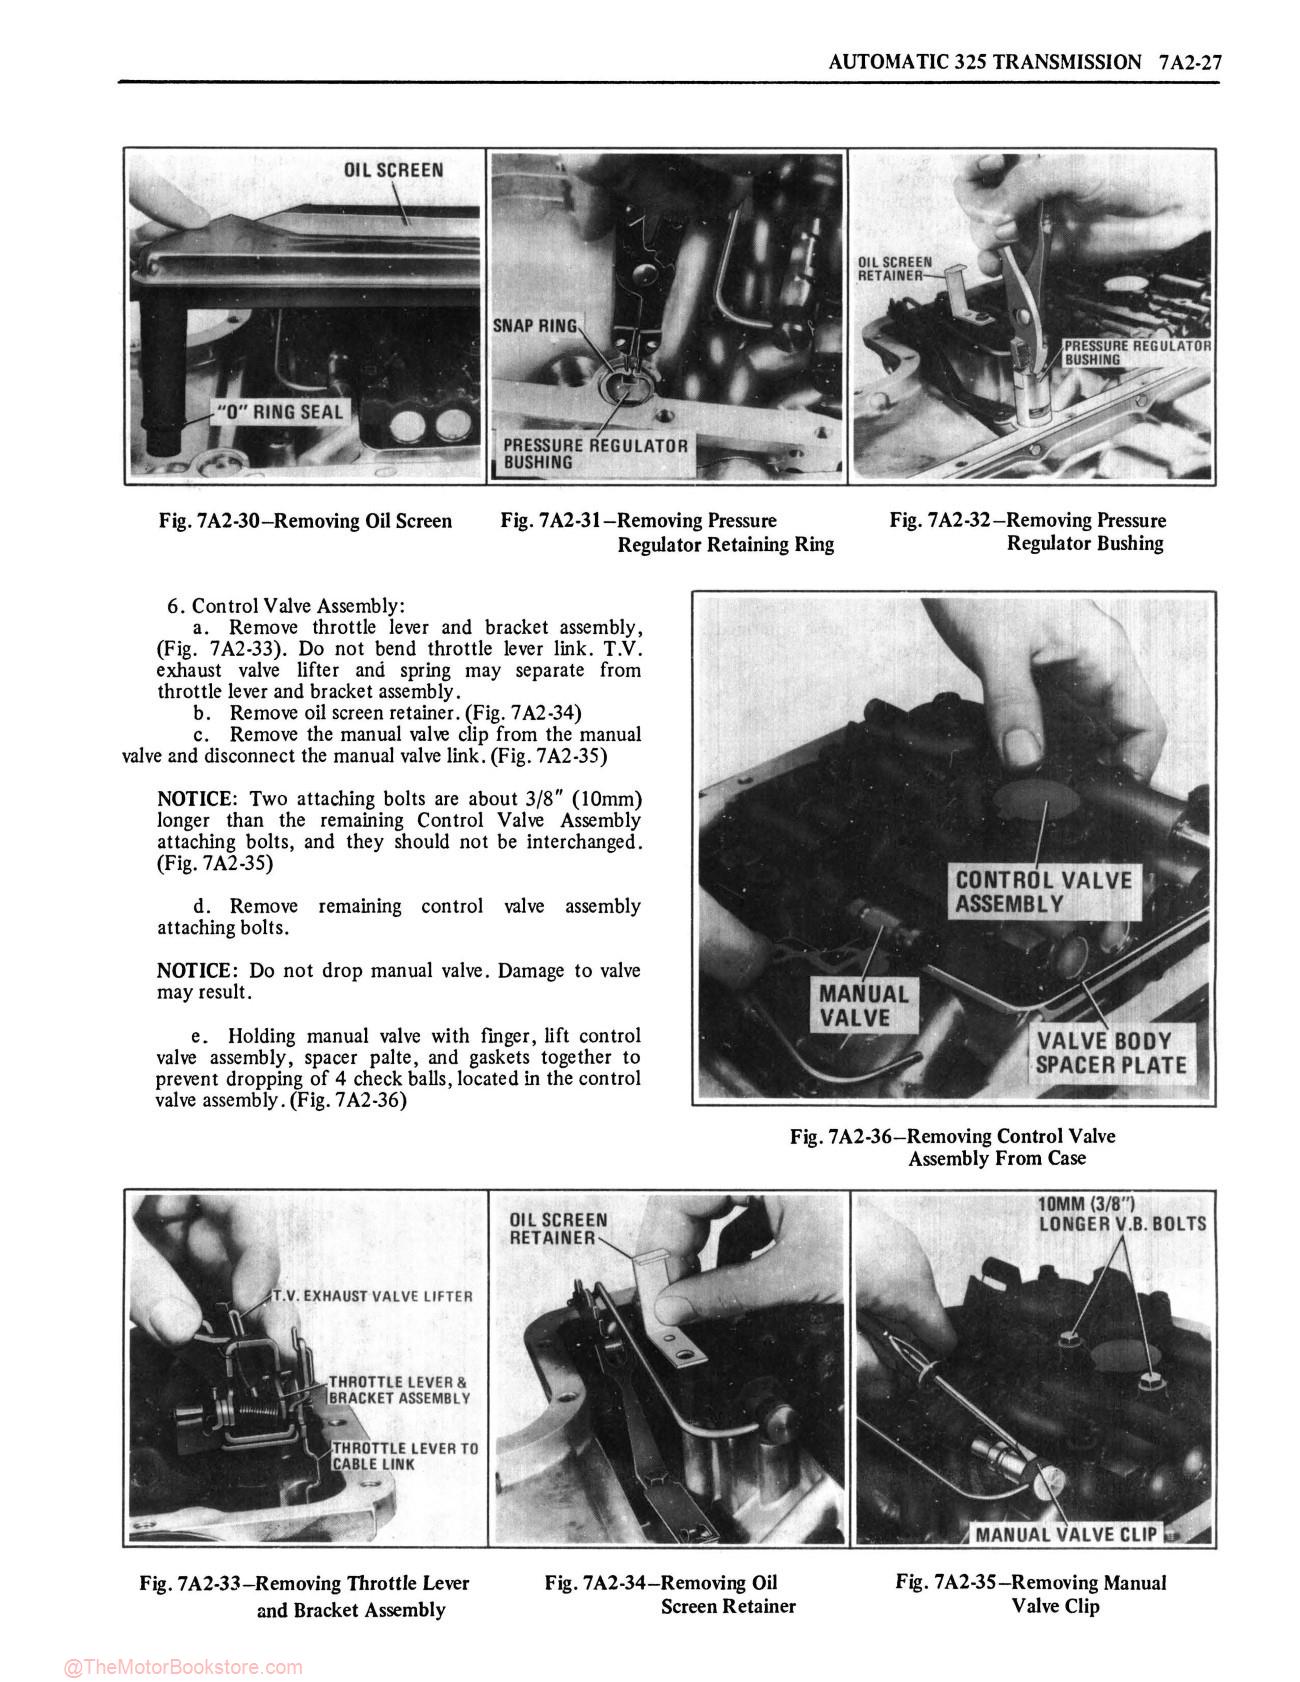 1979 Oldsmobile Service Repair Manual - Sample Page 2